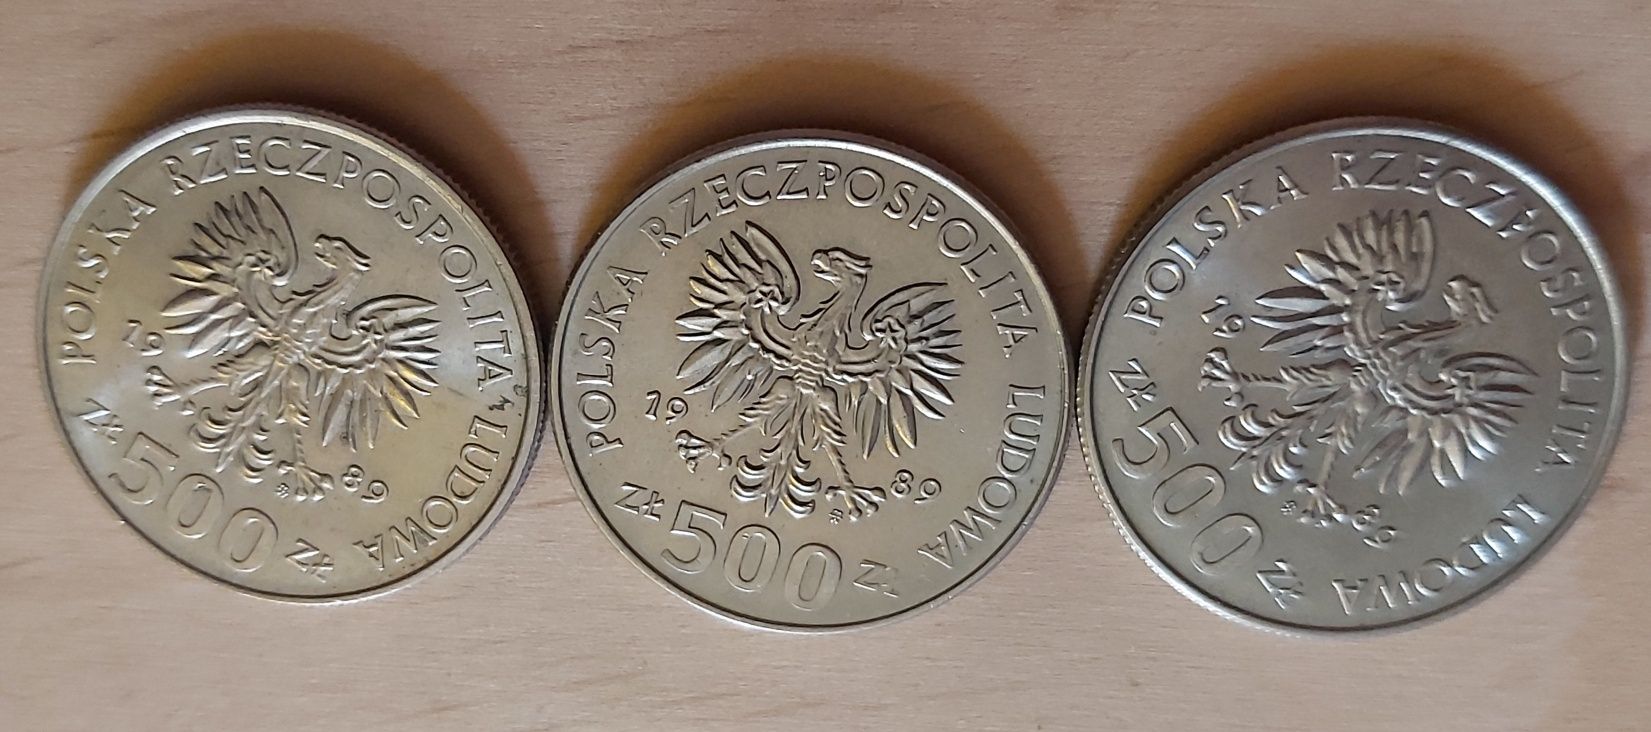 500 złotych - Obrona Narodu Polskiego - 1989 rok